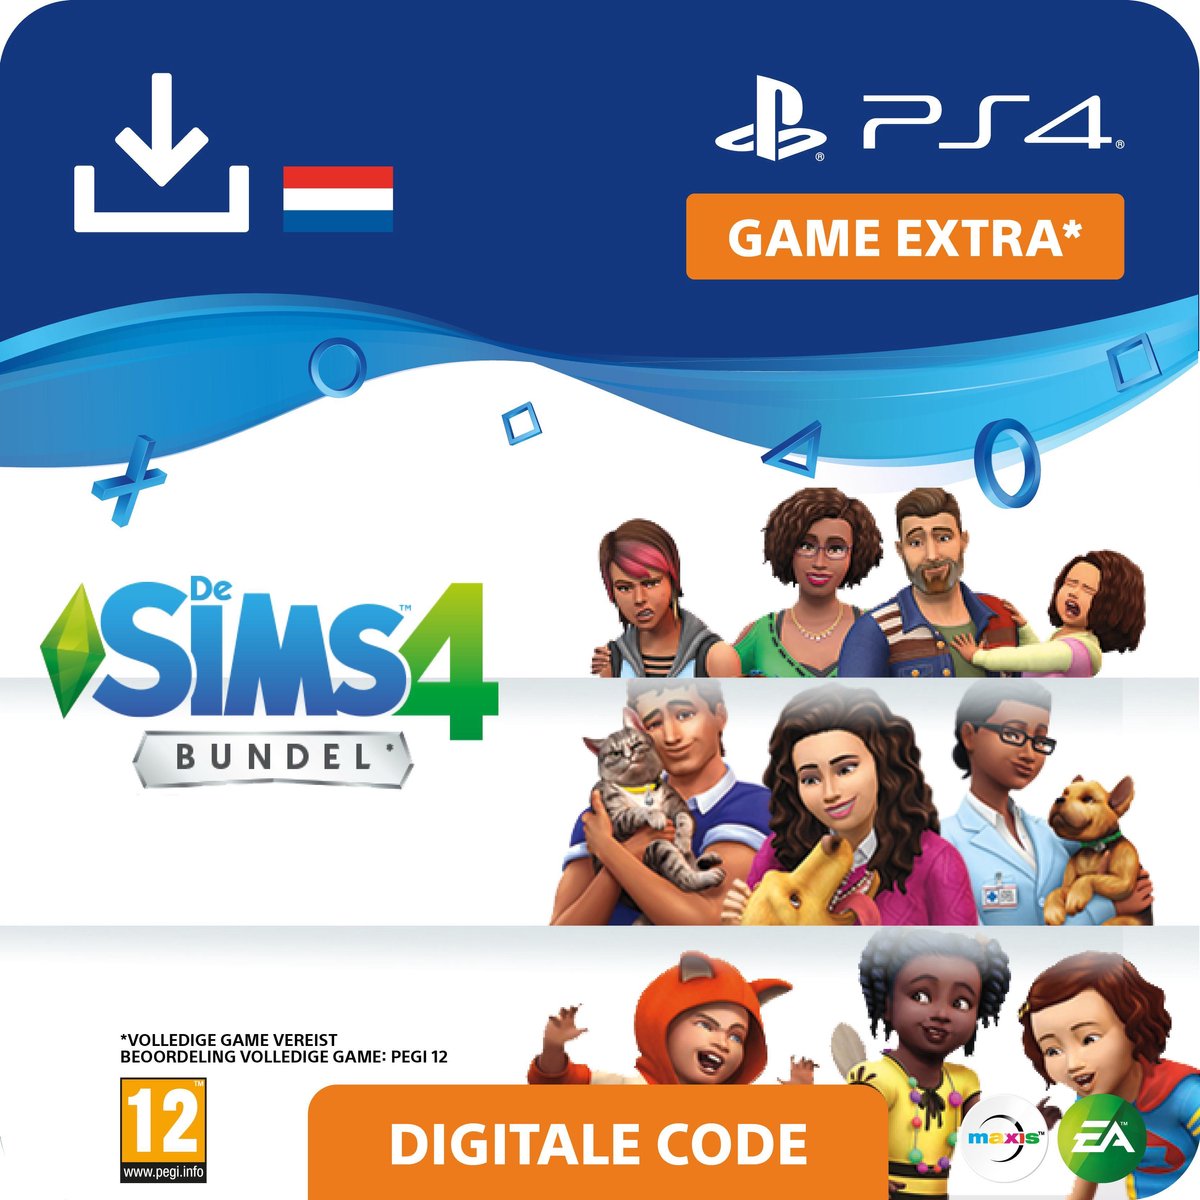 De Sims 4 - uitbreidingsset - Bundel Honden en Katten en Ouderschap - NL - PS4 download - Sony digitaal